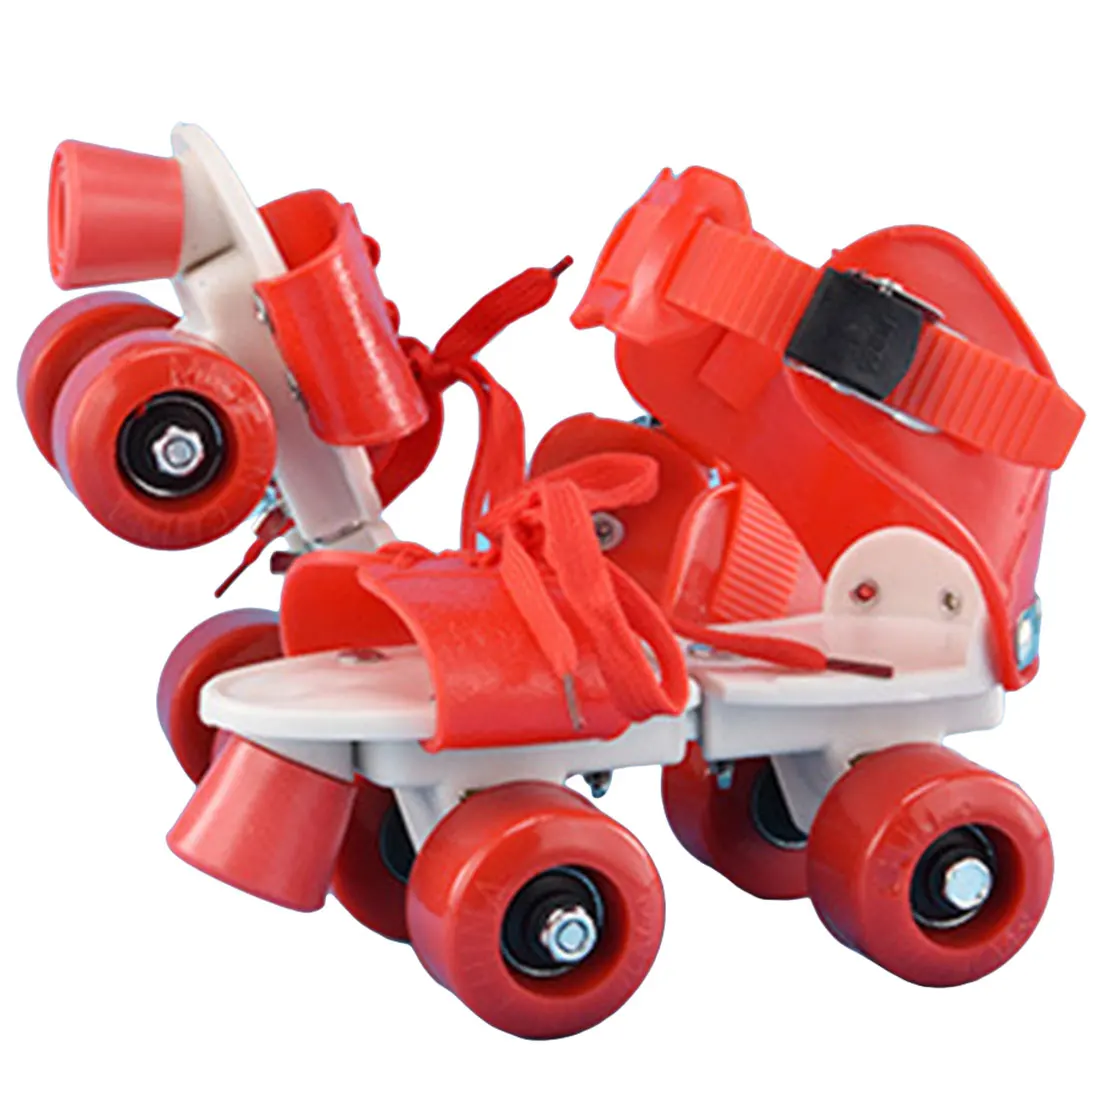 Совершенно новые детские роликовые коньки двухрядные 4 колеса регулируемый размер катания обувь раздвижные Инлайн ролики для слалома детские подарки - Цвет: B